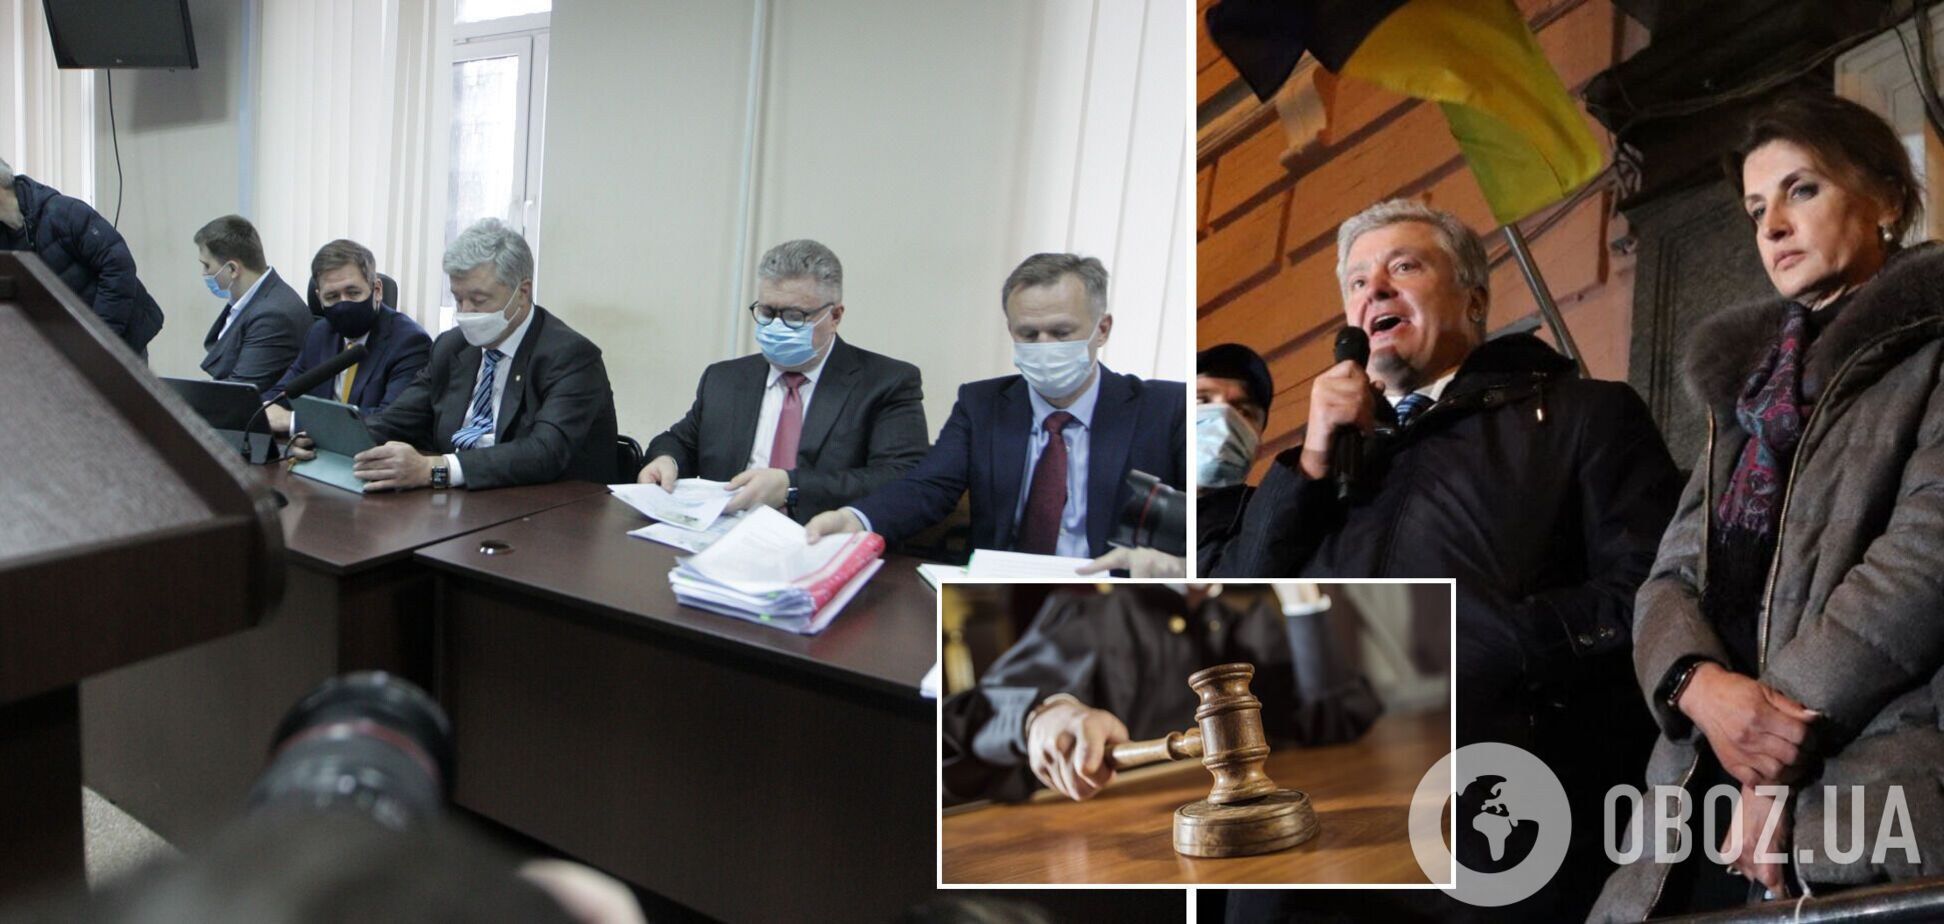 Суд перенес заседание по избранию меры пресечения Порошенко